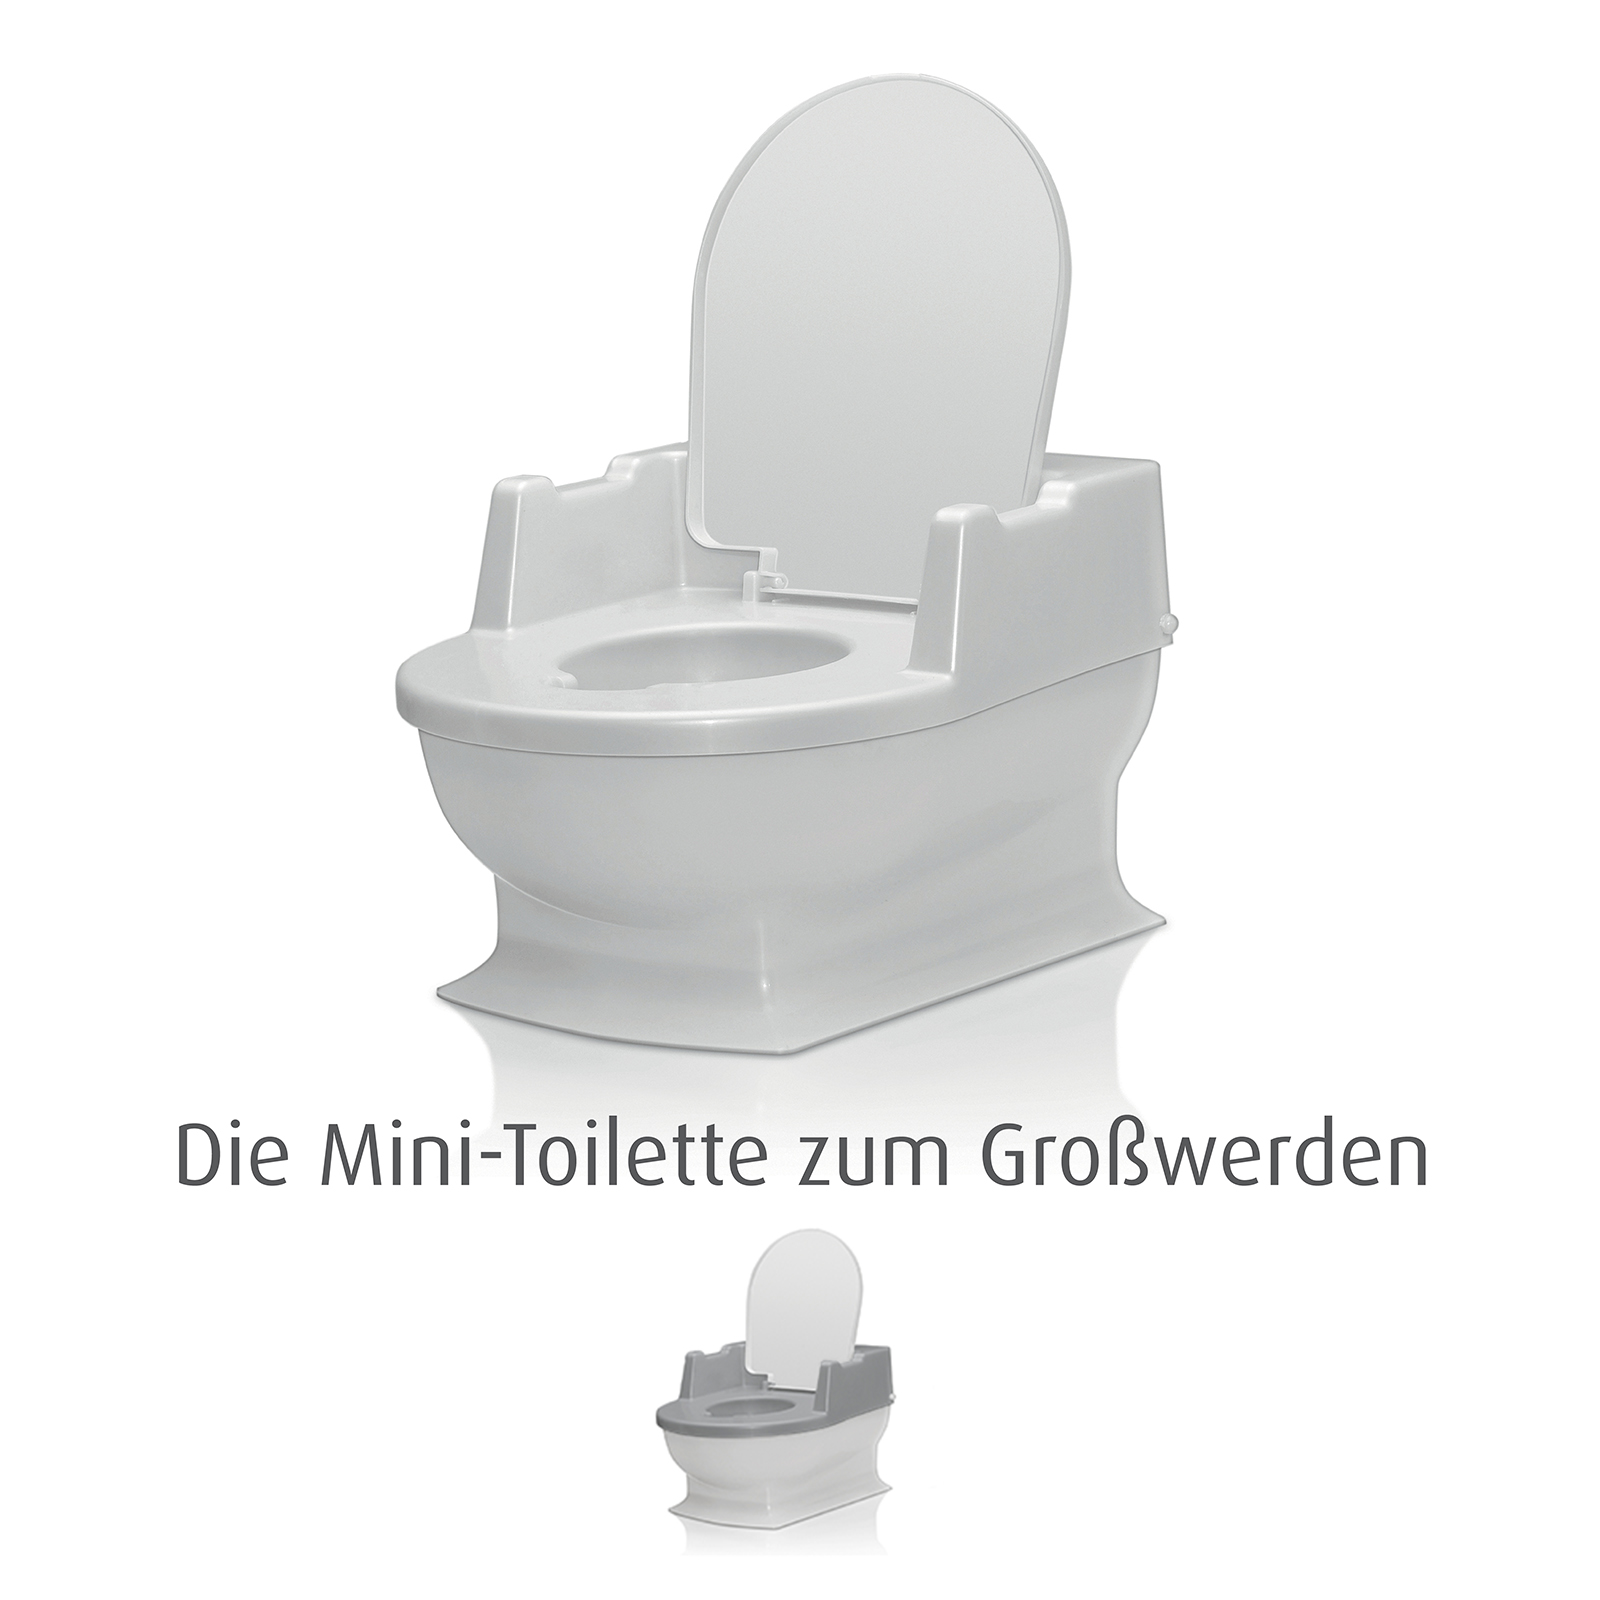 Sitzfritz - Die Mini-Toilette zum Großwerden, weiß - Deine Auswahl: Weiß